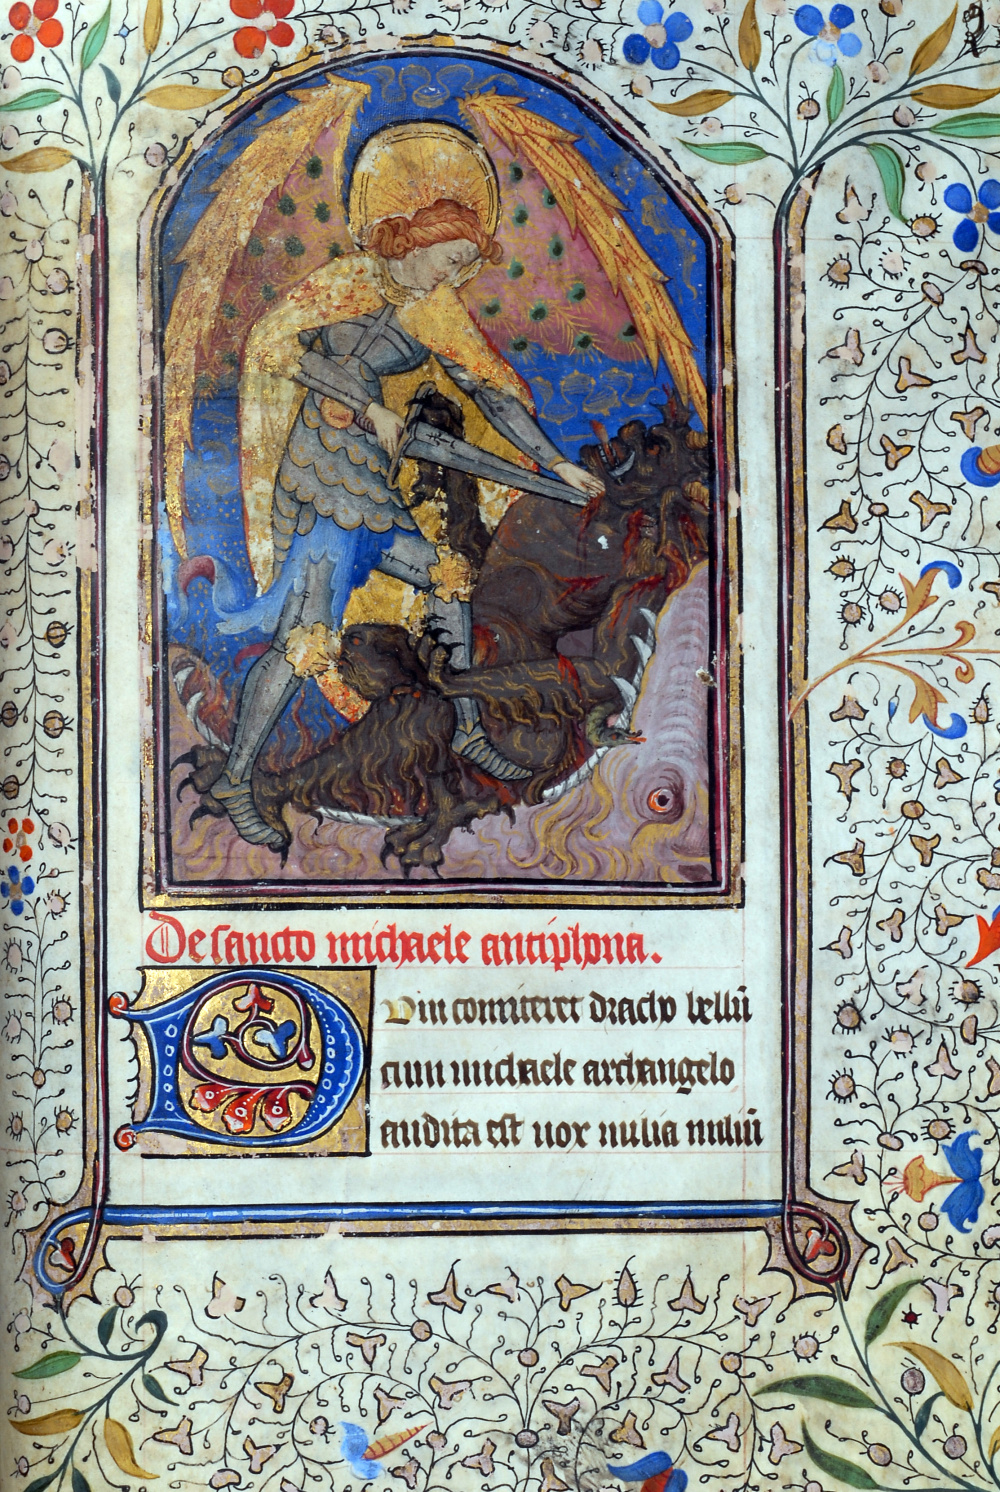 Heures à l'usage de Rome (15e siècle) : Saint Michel. © Bibliothèque publique et universitaire de Valence<br>